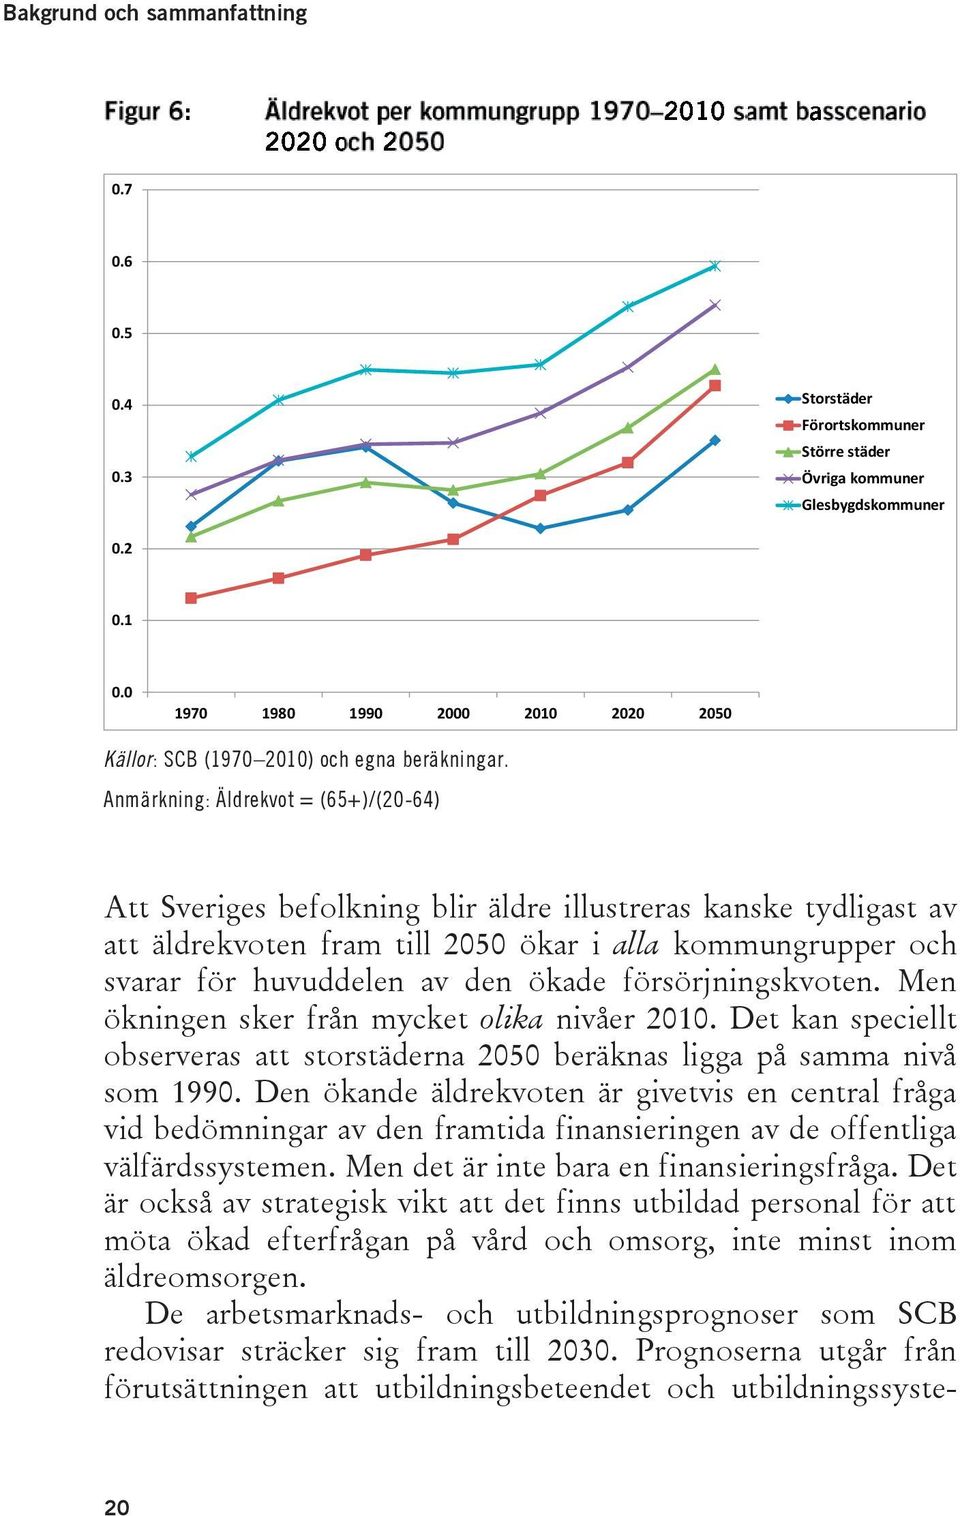 Anmärkning: Äldrekvot = (65+)/(20-64) Att Sveriges befolkning blir äldre illustreras kanske tydligast av att äldrekvoten fram till 2050 ökar i alla kommungrupper och svarar för huvuddelen av den